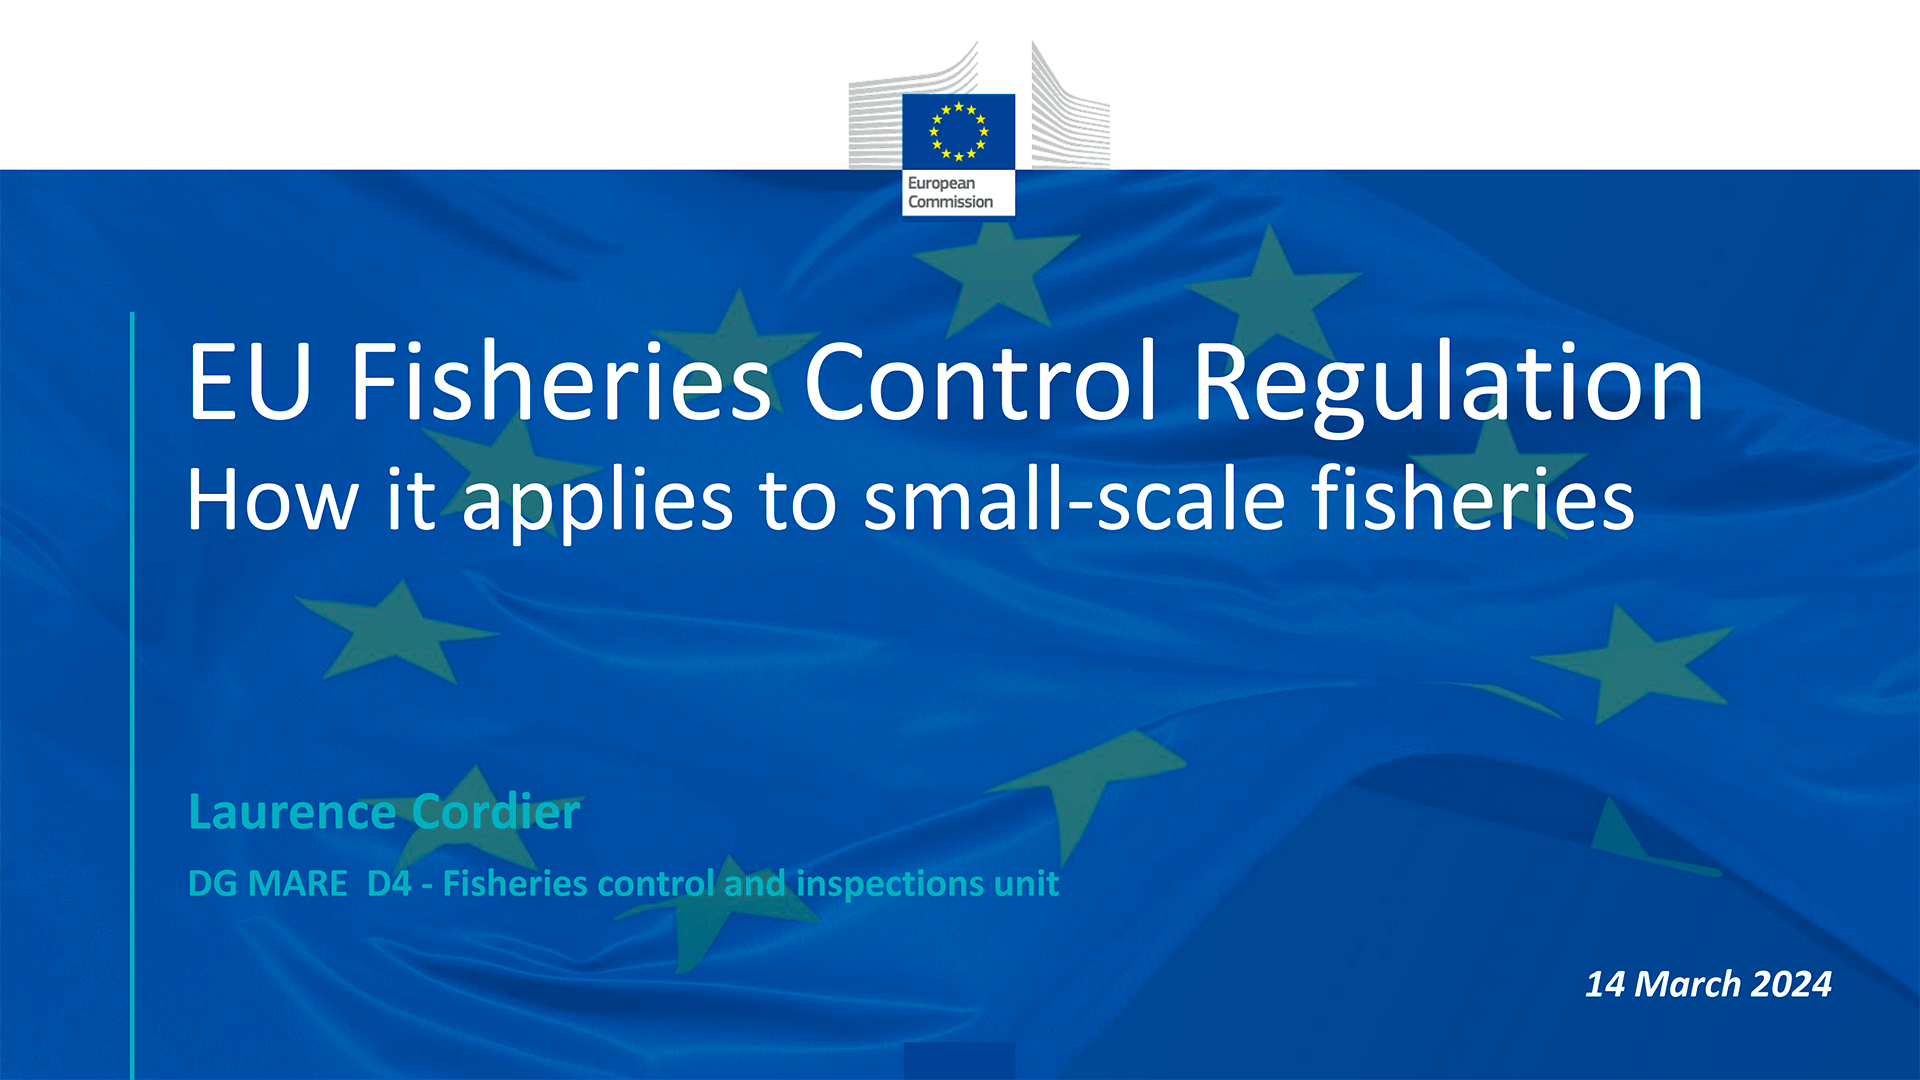 Portada de la presentación utilizada en el webinar de FAMENET para explicar las repercusiones del nuevo Reglamento de Control de la Pesca en la flota artesanal.